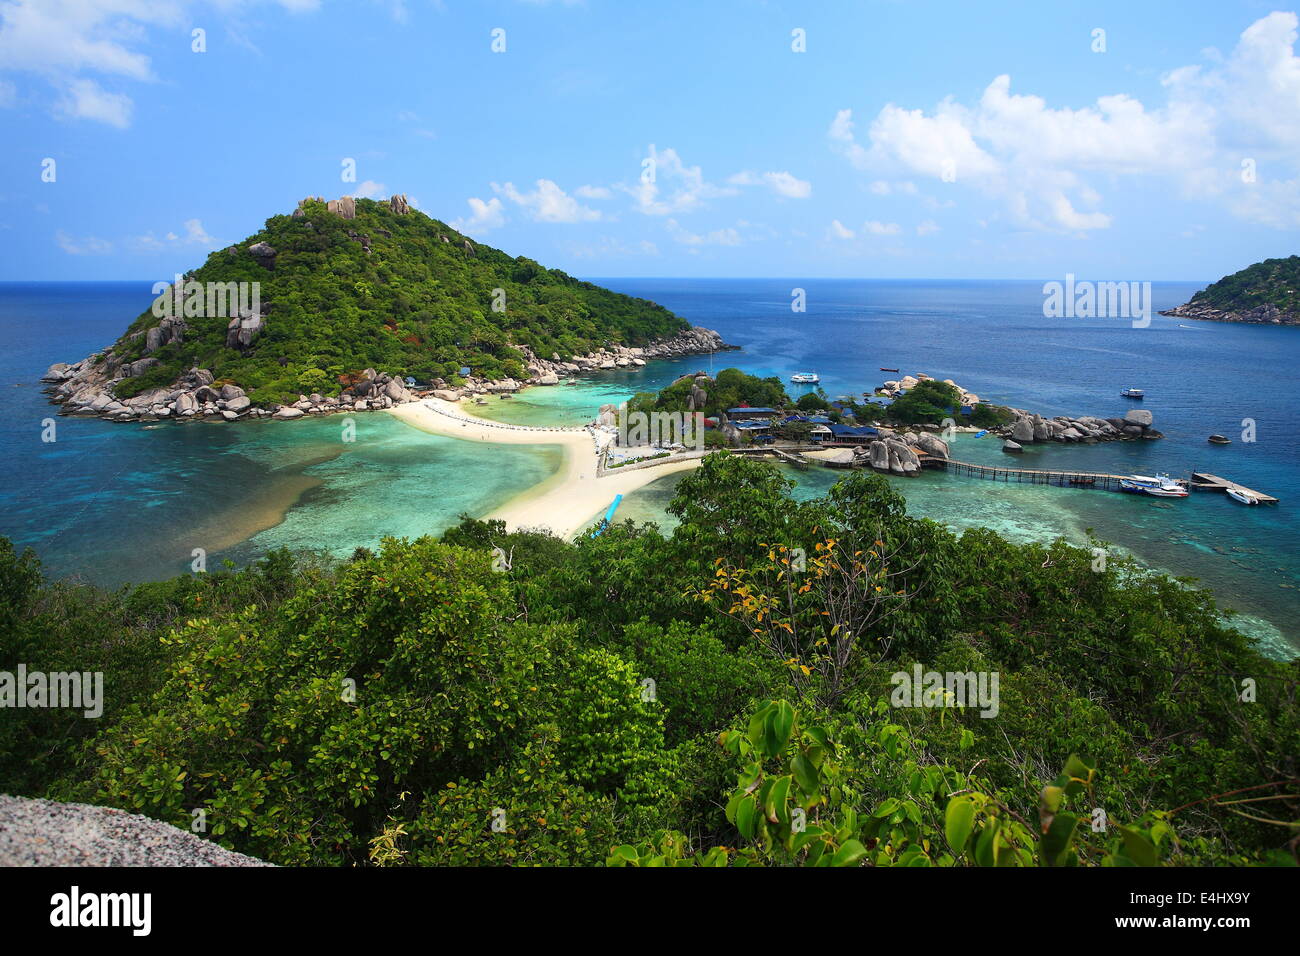 Nang yuan island of Thailand Stock Photo